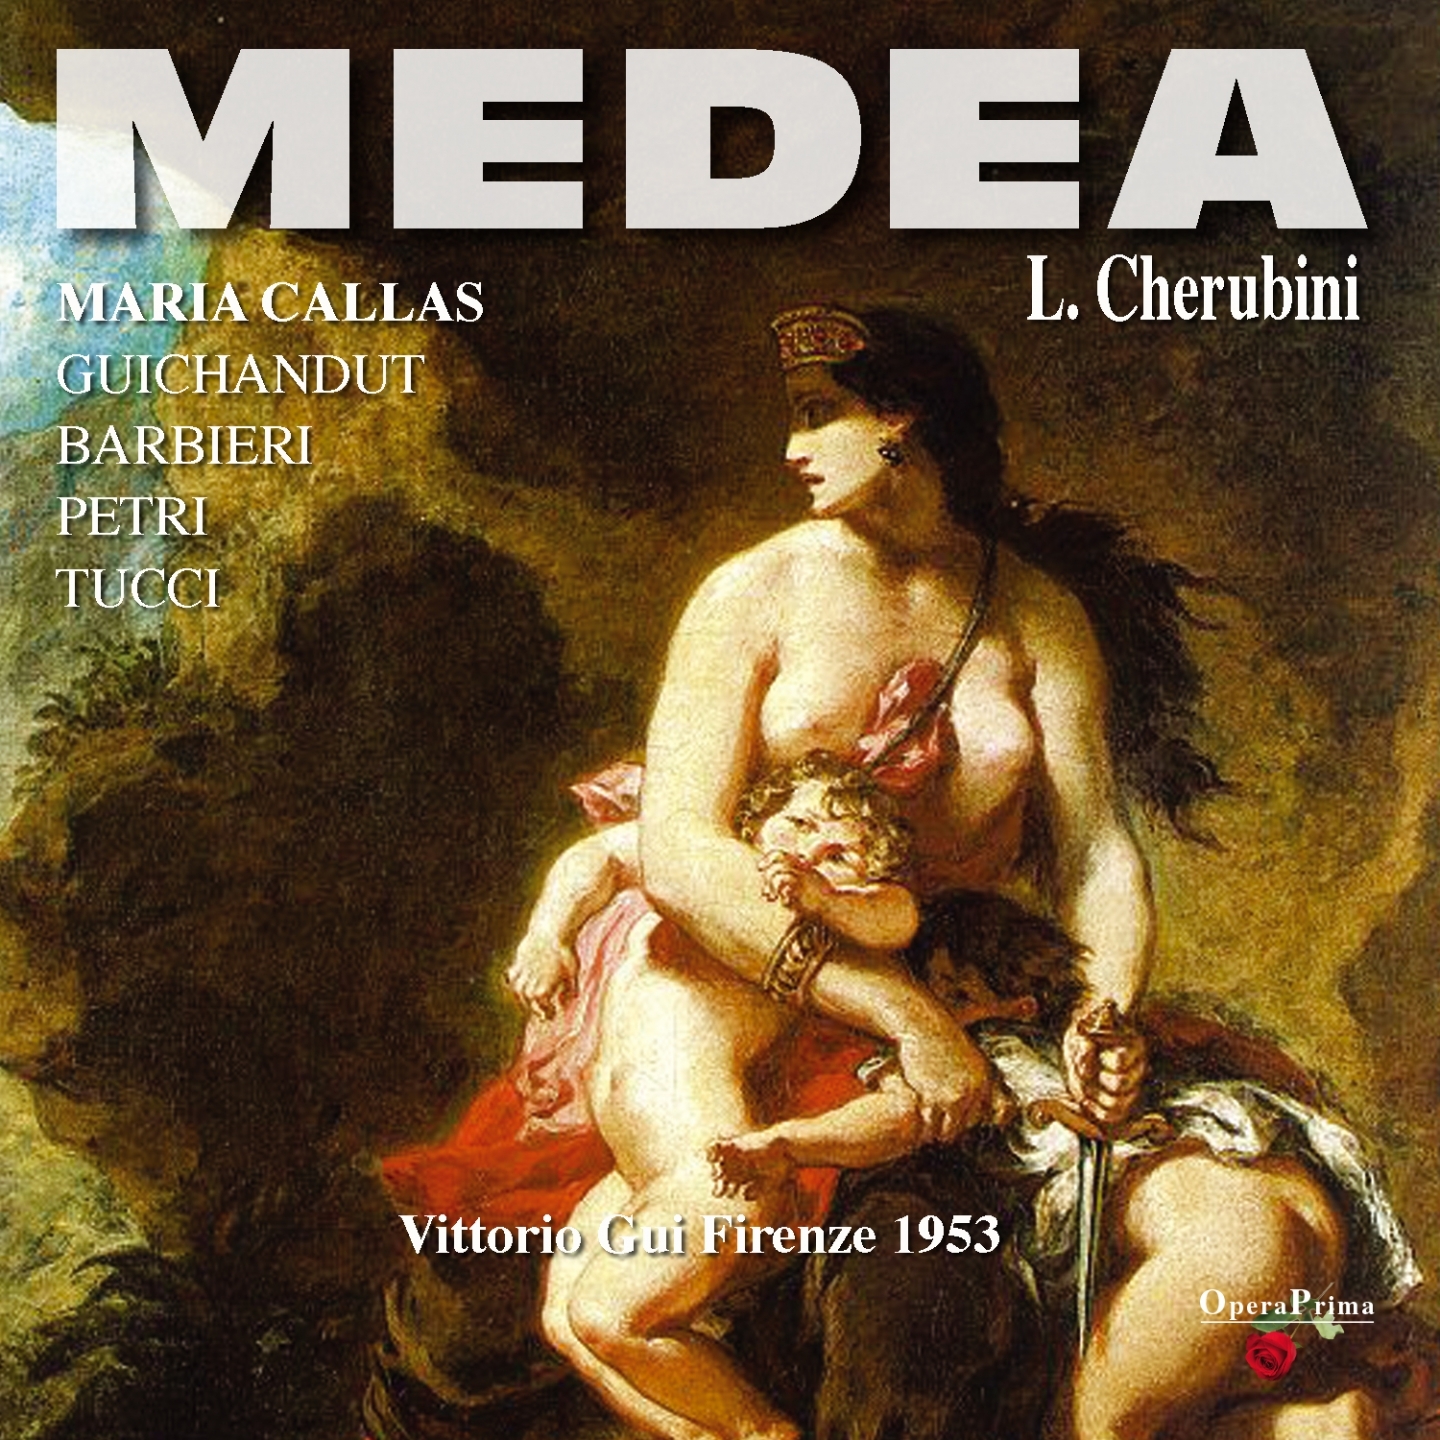 Medea : Act II - "Solo un pianto"